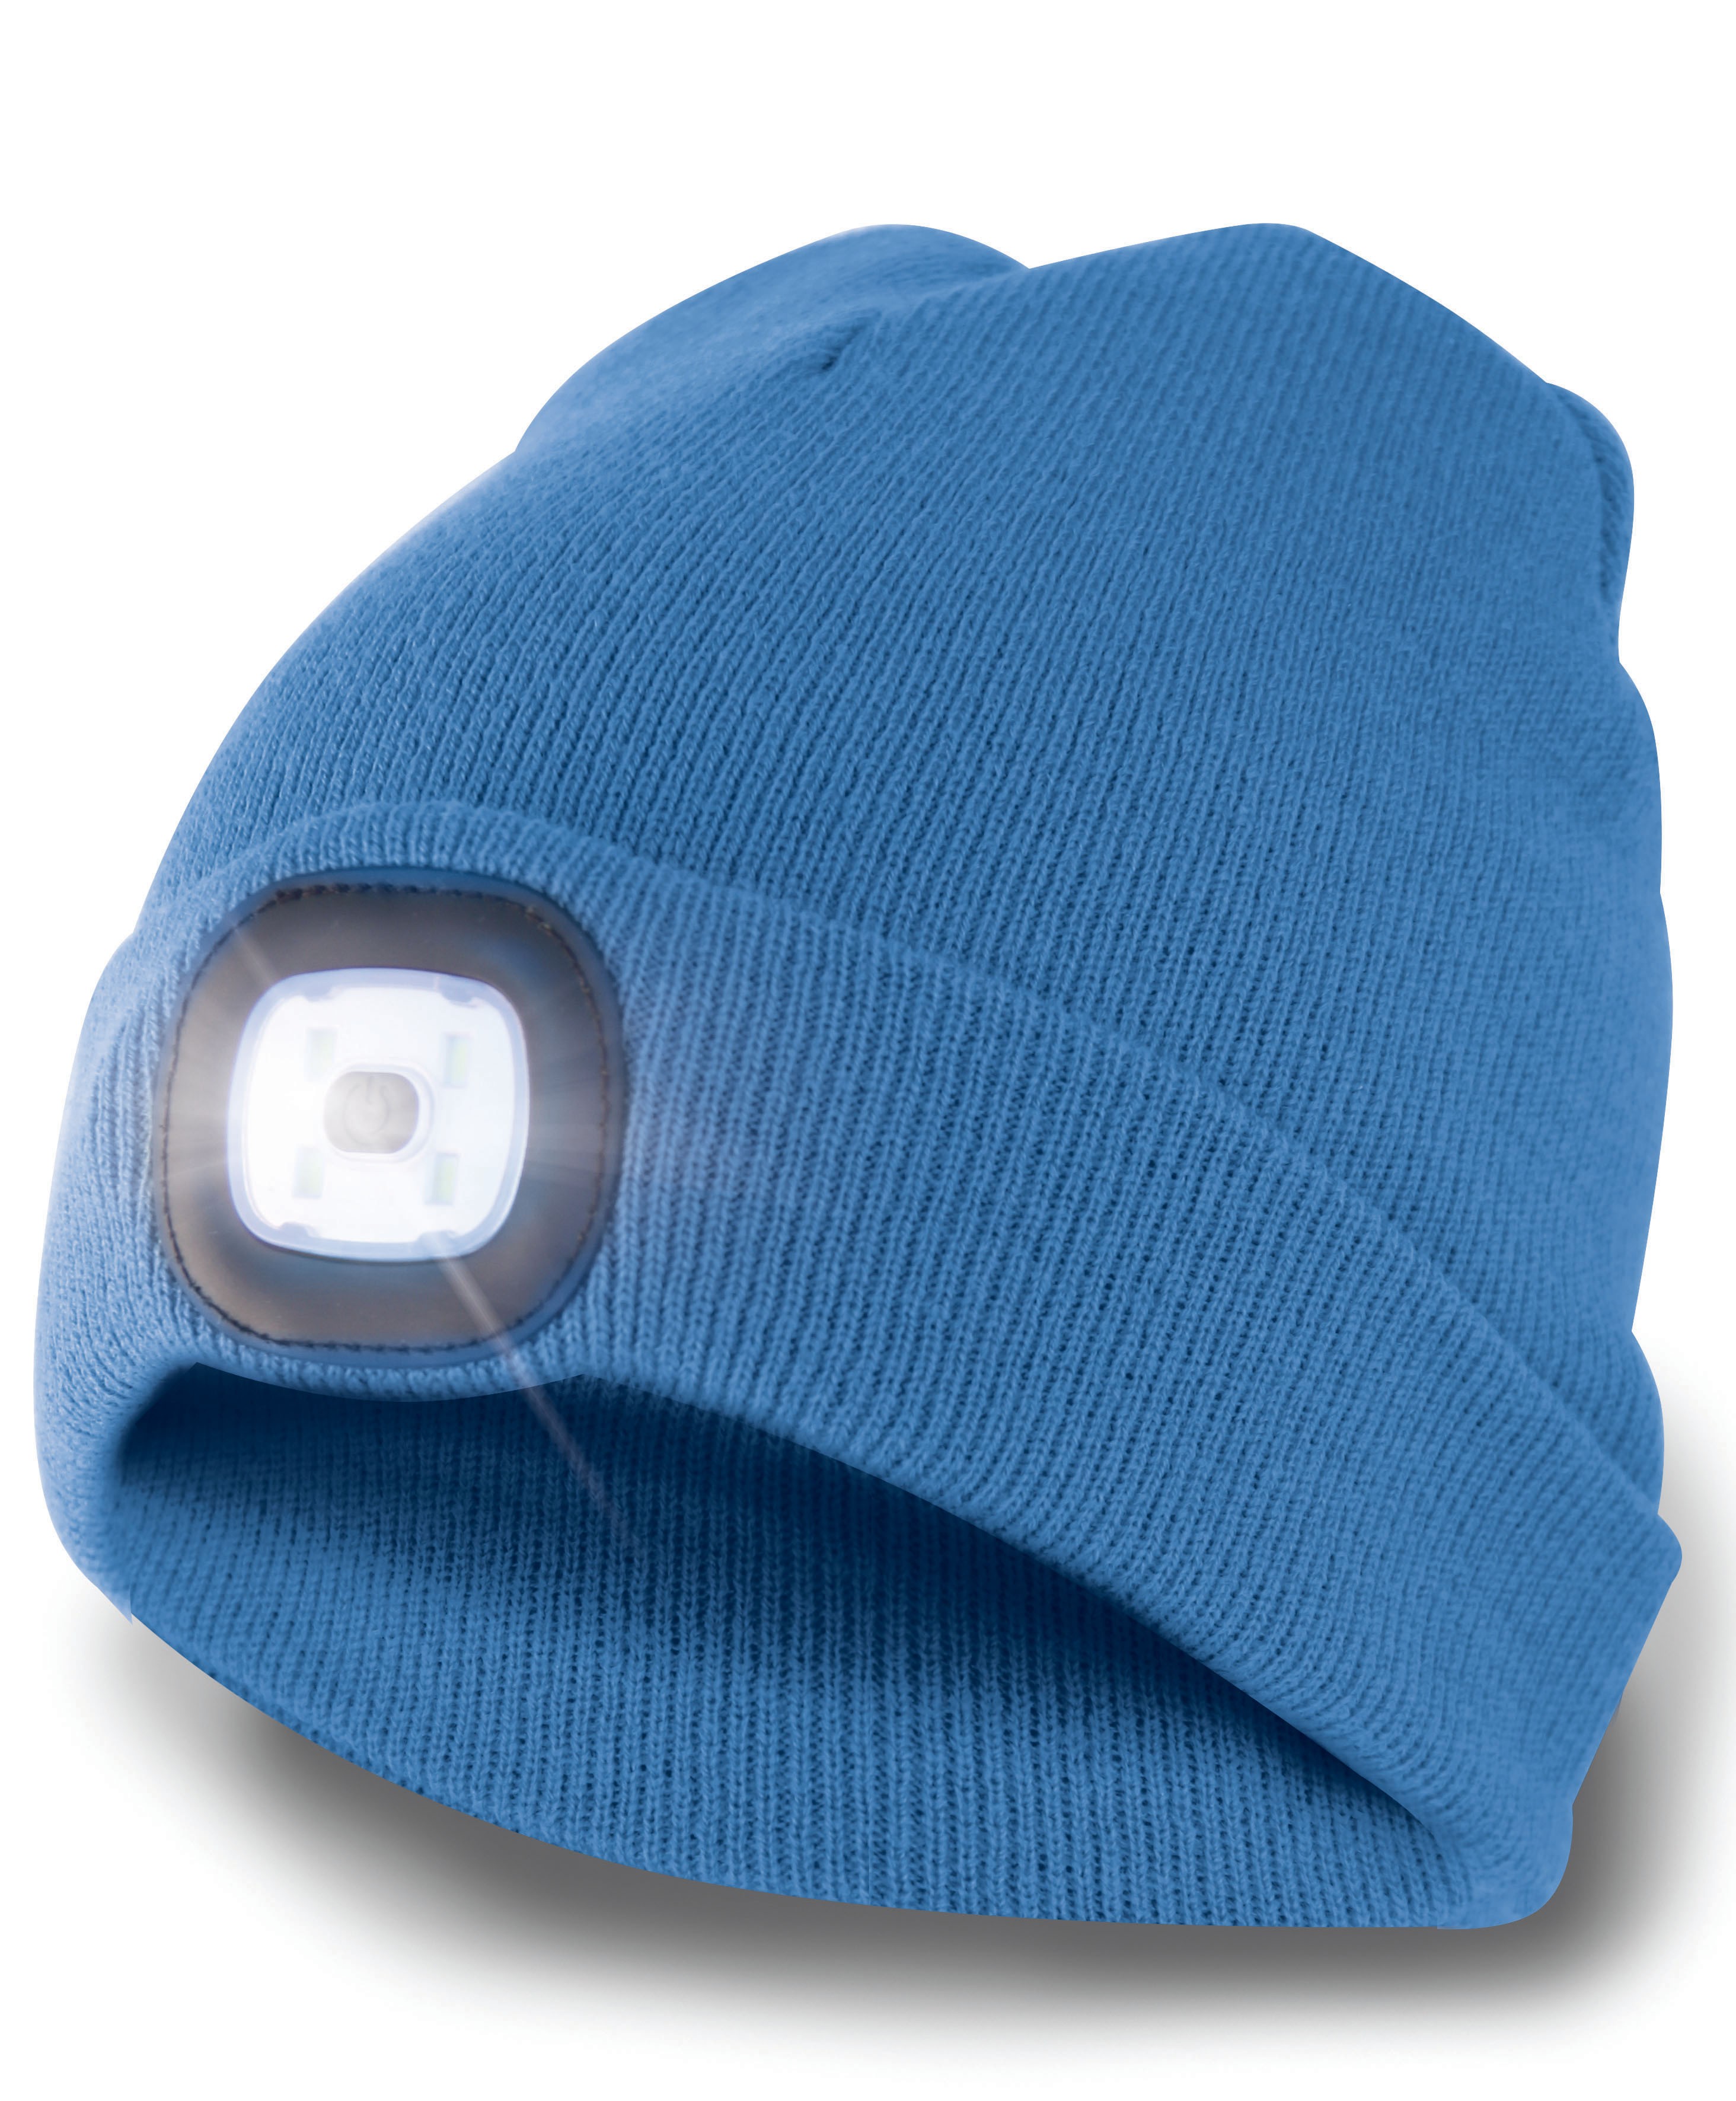 LIGHTHOUSE : Bonnet avec lumière frontale LED rechargeable. Bleu